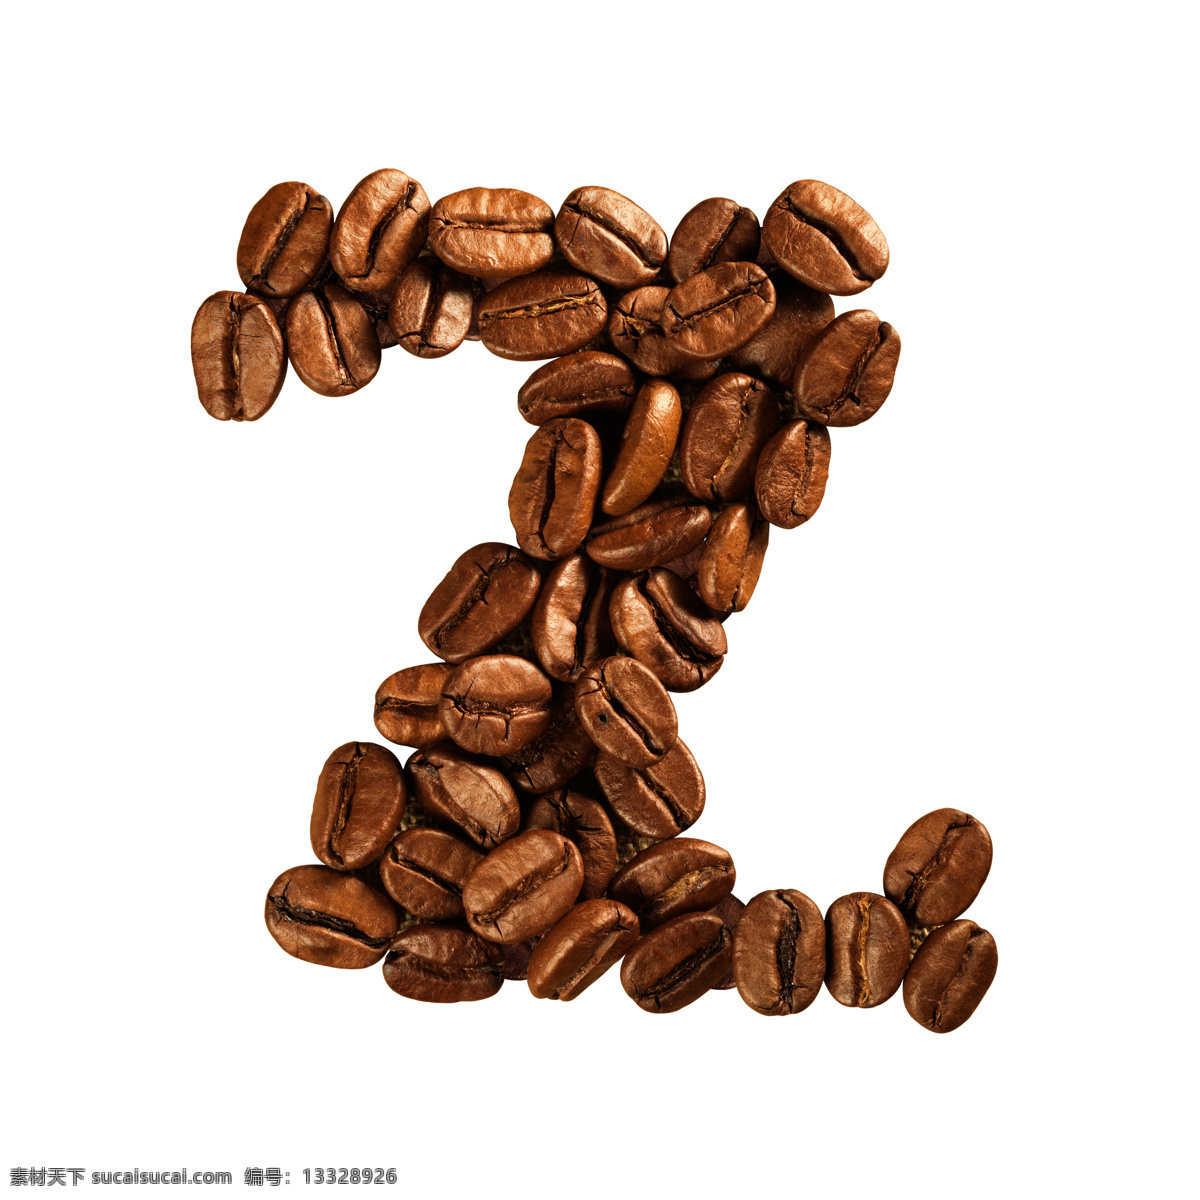 咖啡豆 组成 字母 z 咖啡 文字 艺术字体 咖啡图片 餐饮美食